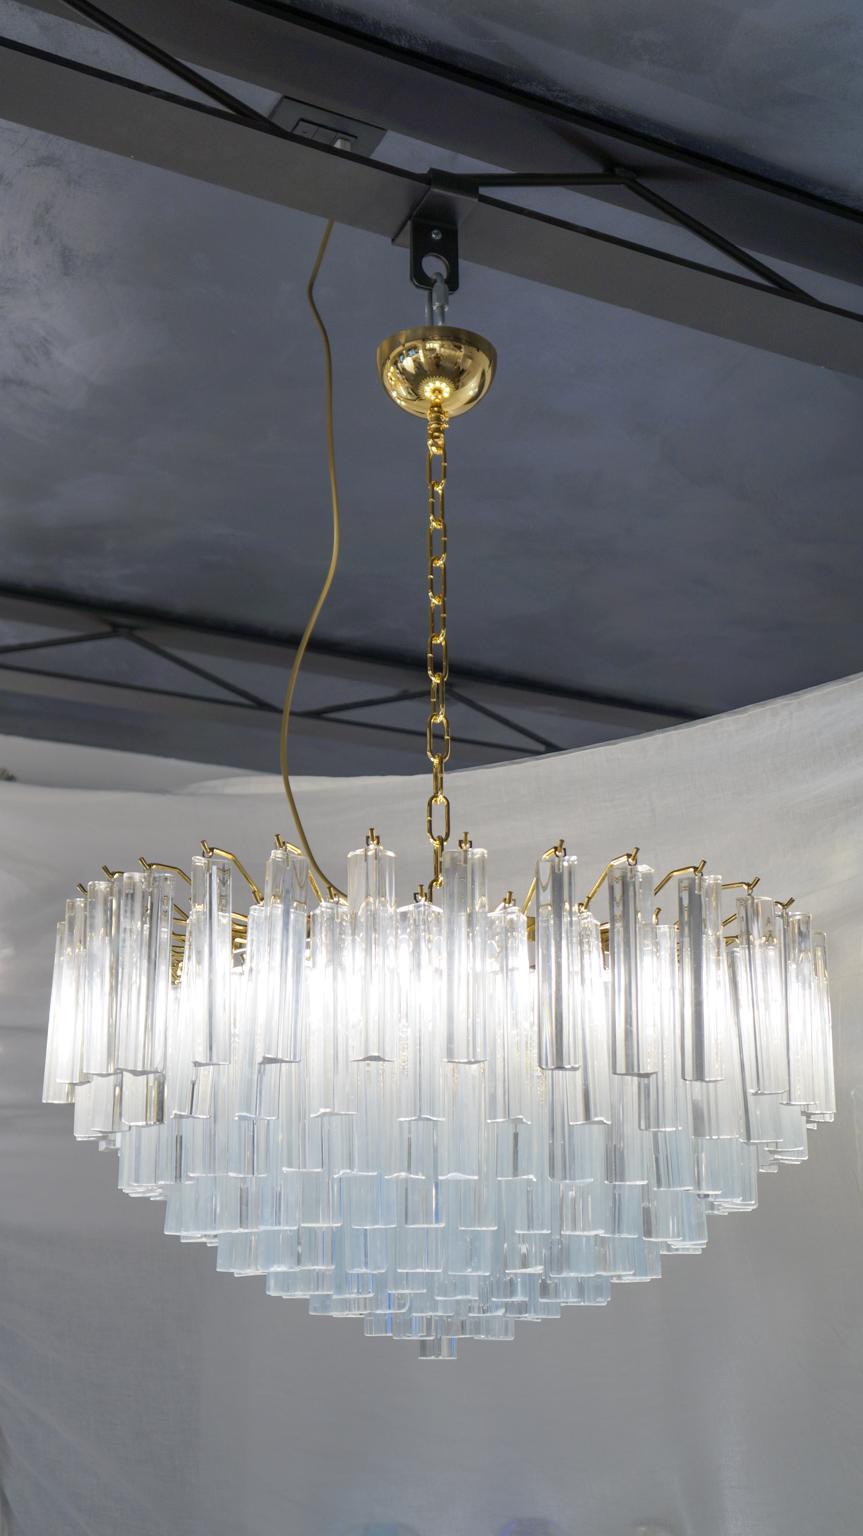 Lustre en verre soufflé de Murano avec 169 éléments en cristal antique, structure en finition dorée et 9 lampes E26 / E27. Les éléments de ce lustre typique sont appelés Triedri, pour leur forme triangulaire. Les assistants prennent une petite